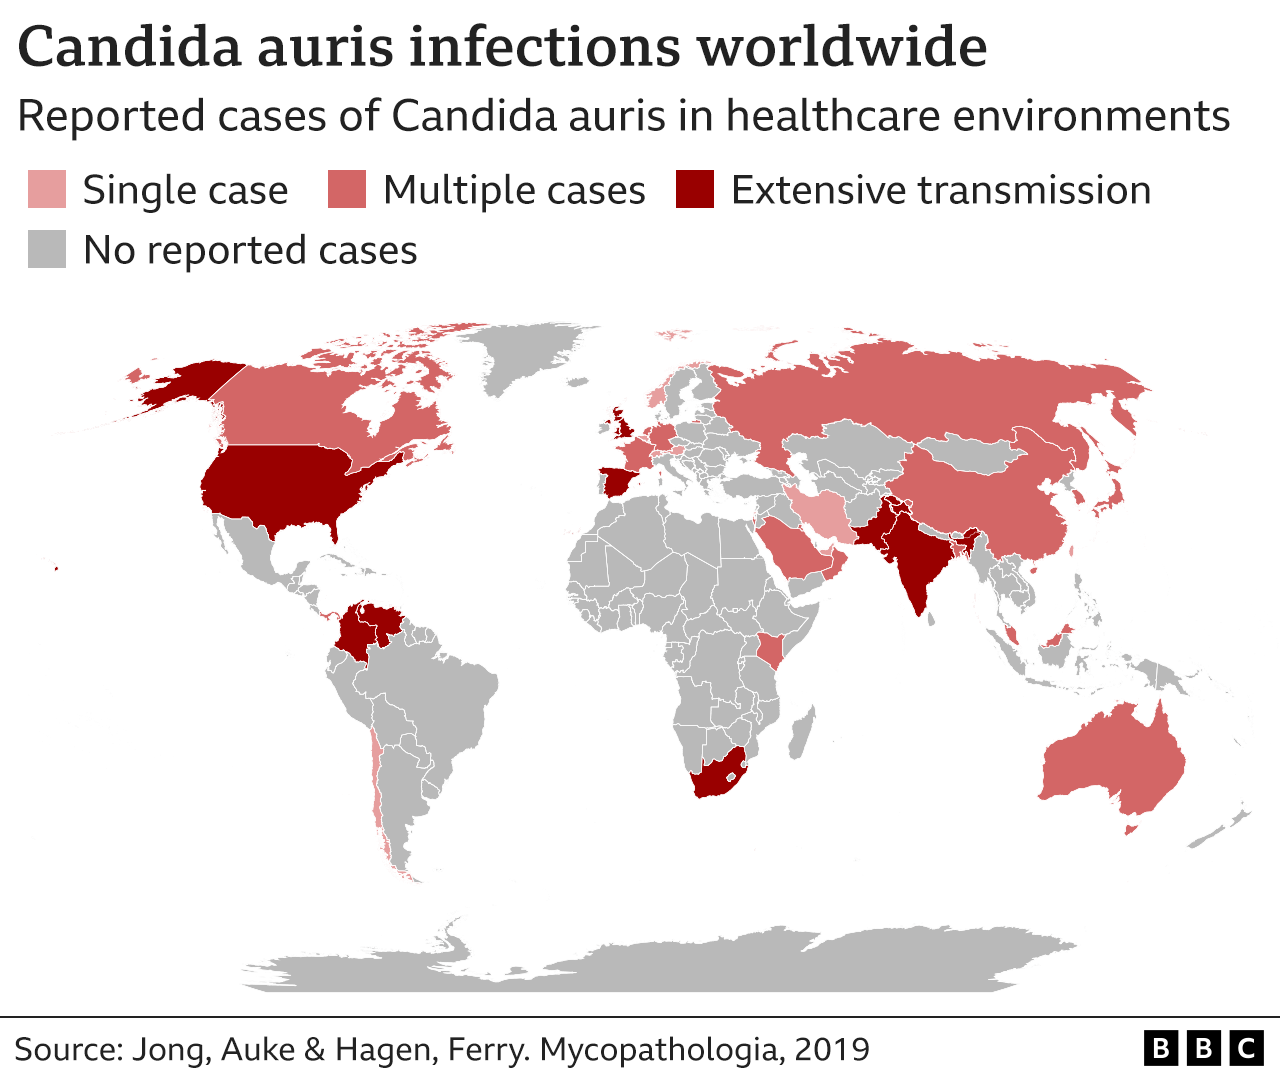 Карта зарегистрированных случаев грибкового патогена Candida auris в медицинских учреждениях по всему миру. В Канаде, России, Китае, Бангладеш, Австралии, Малайзии, Саудовской Аравии, Омане, Кении, Франции, Германии и Нидерландах зарегистрировано несколько случаев, но в Великобритании, США, Испании, Индии, Пакистане, Южной Африке, Венесуэле и Колумбии сообщили об обширных межбольничных передачах.